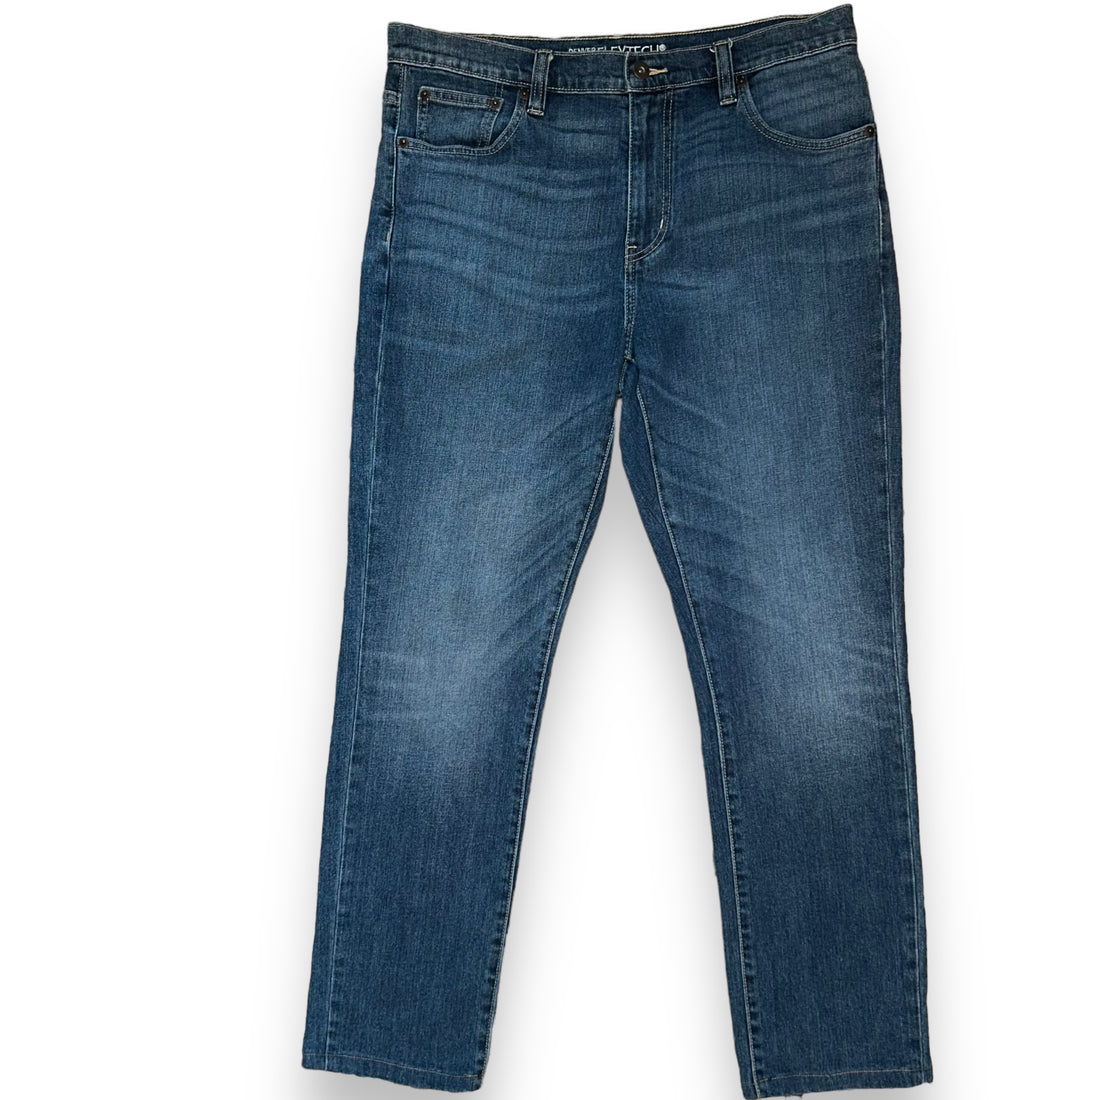 Jeans DENVER HAYES (34 US L)